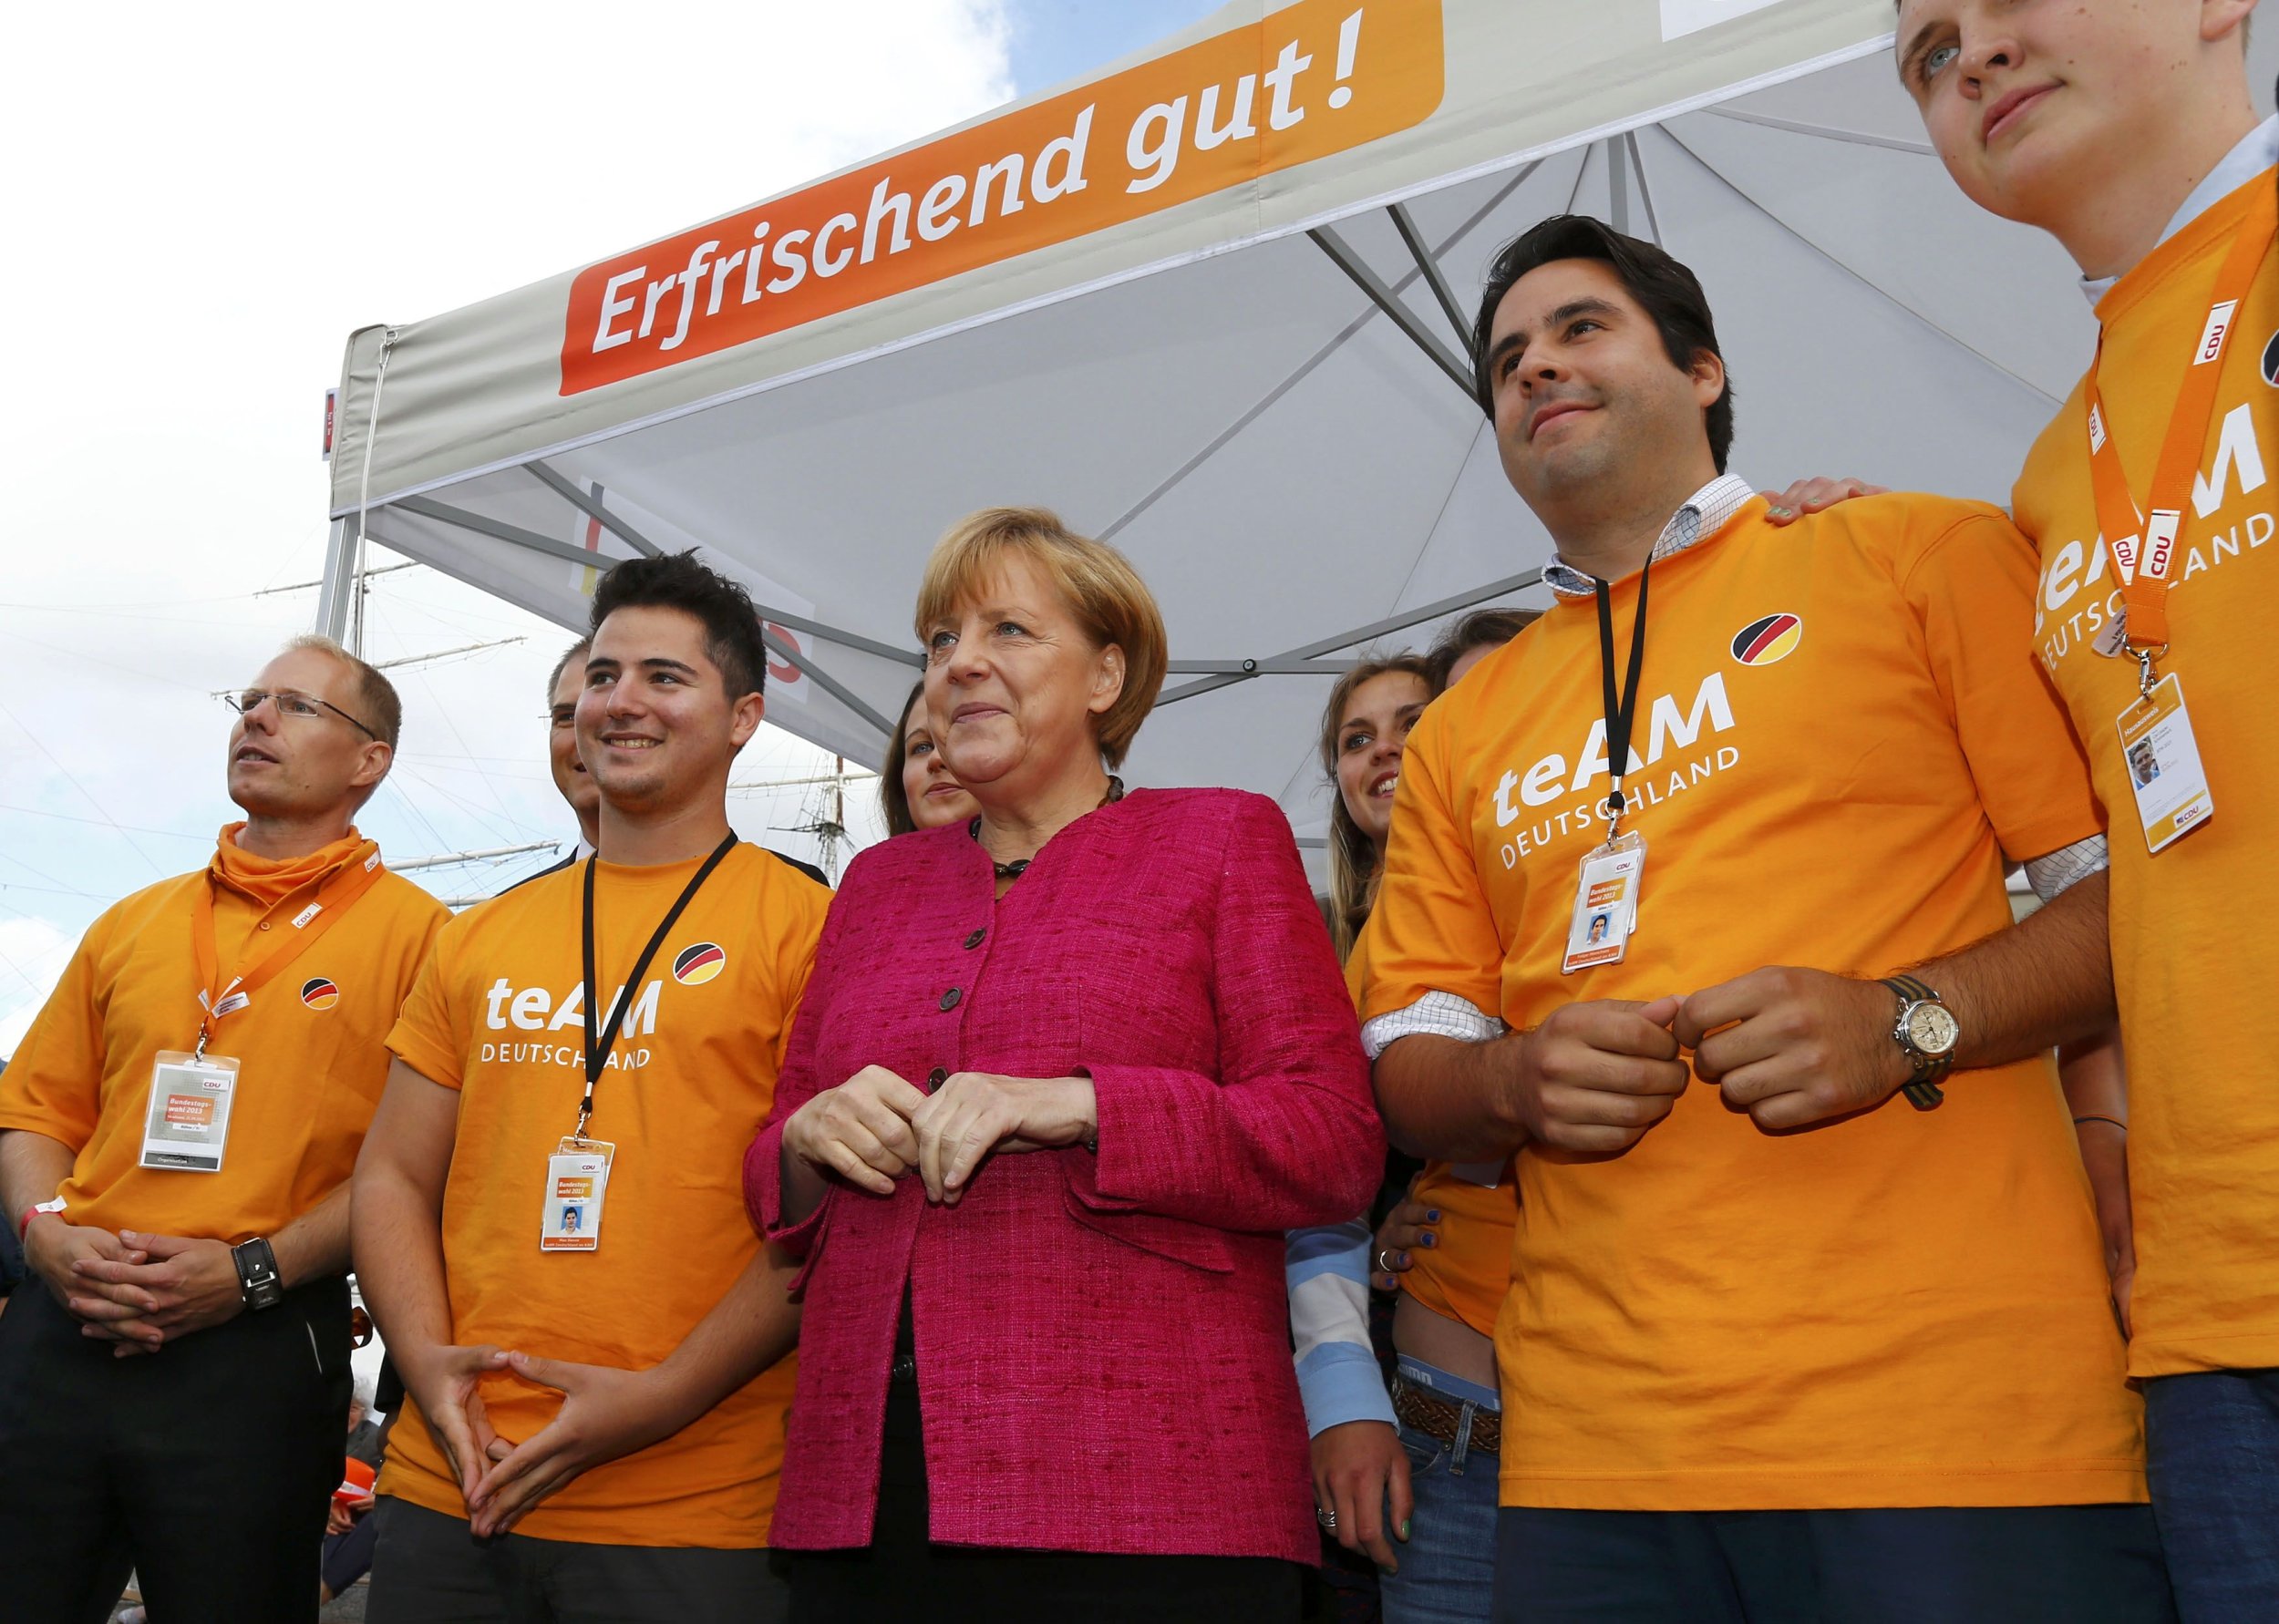 Merkel Orange Campaign